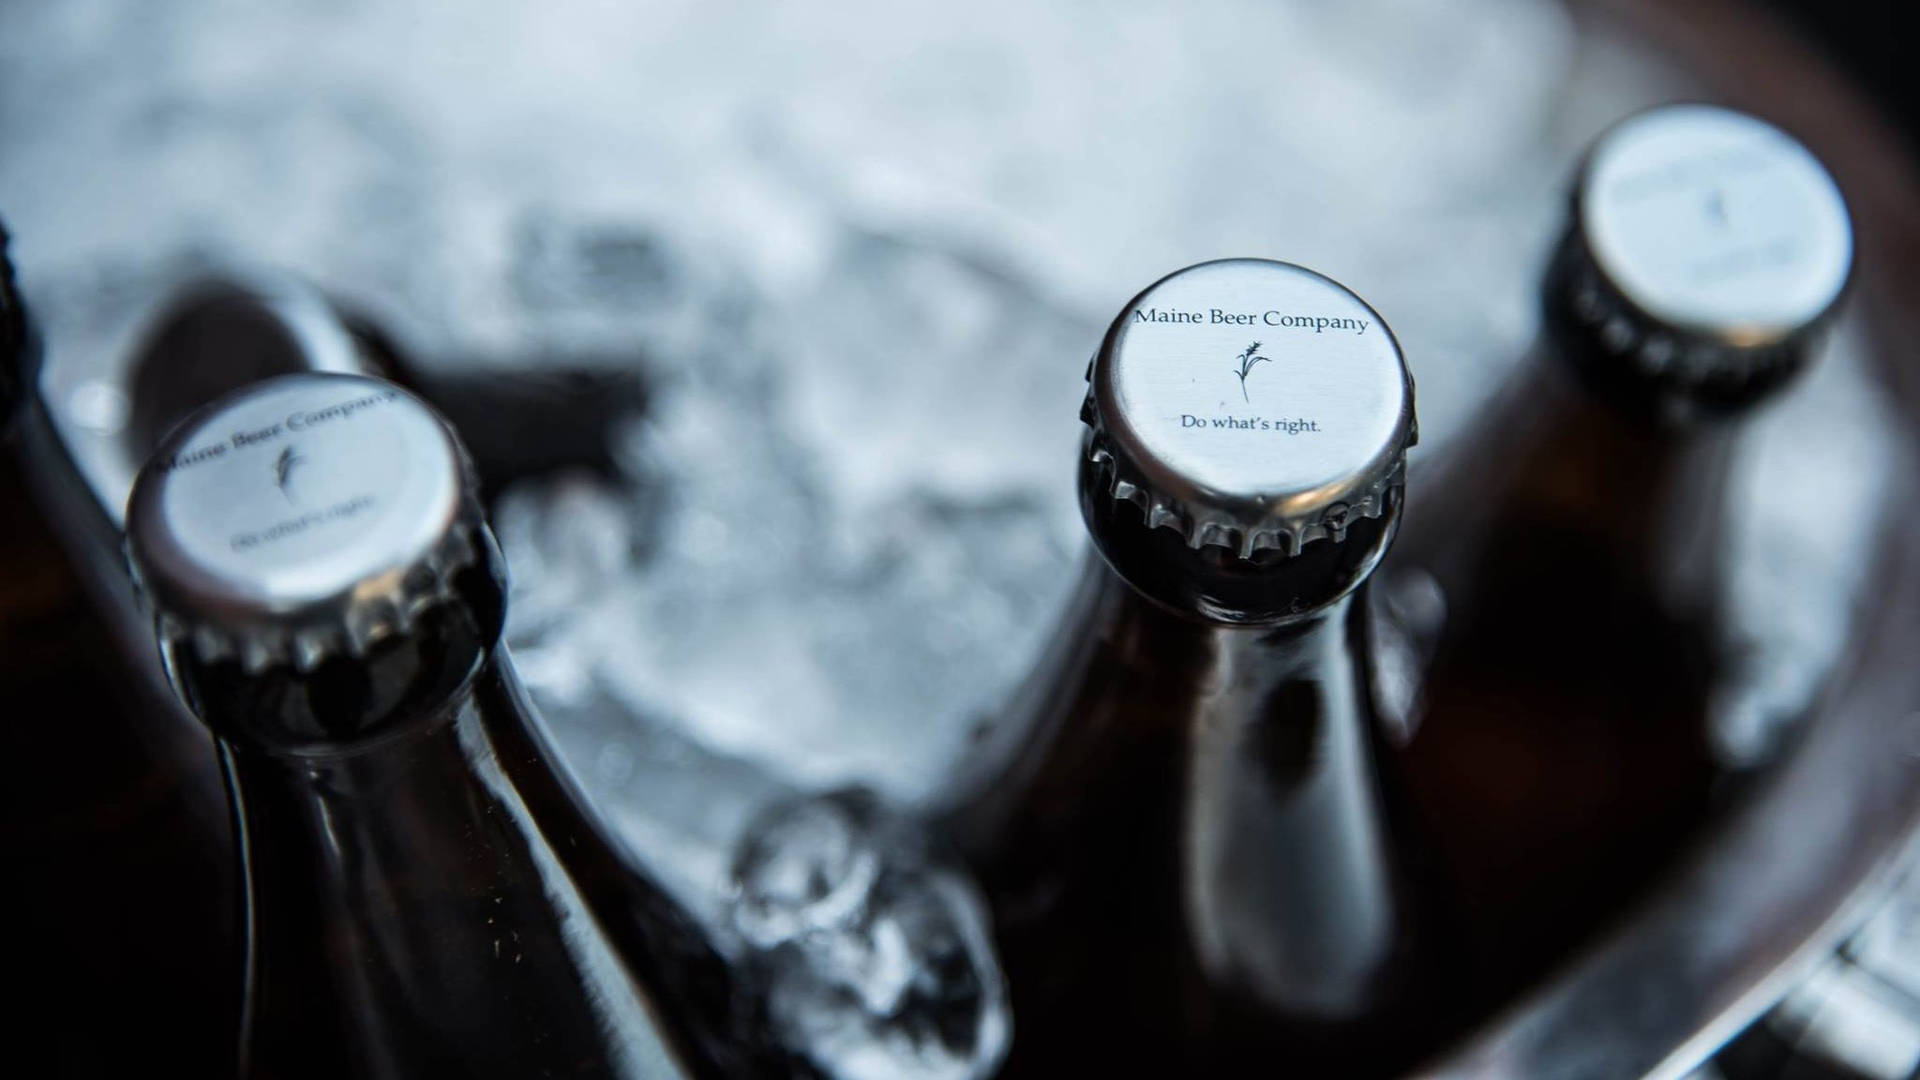 Capsde Garrafas Da Maine Beer Company Em Um Balde De Gelo. Papel de Parede